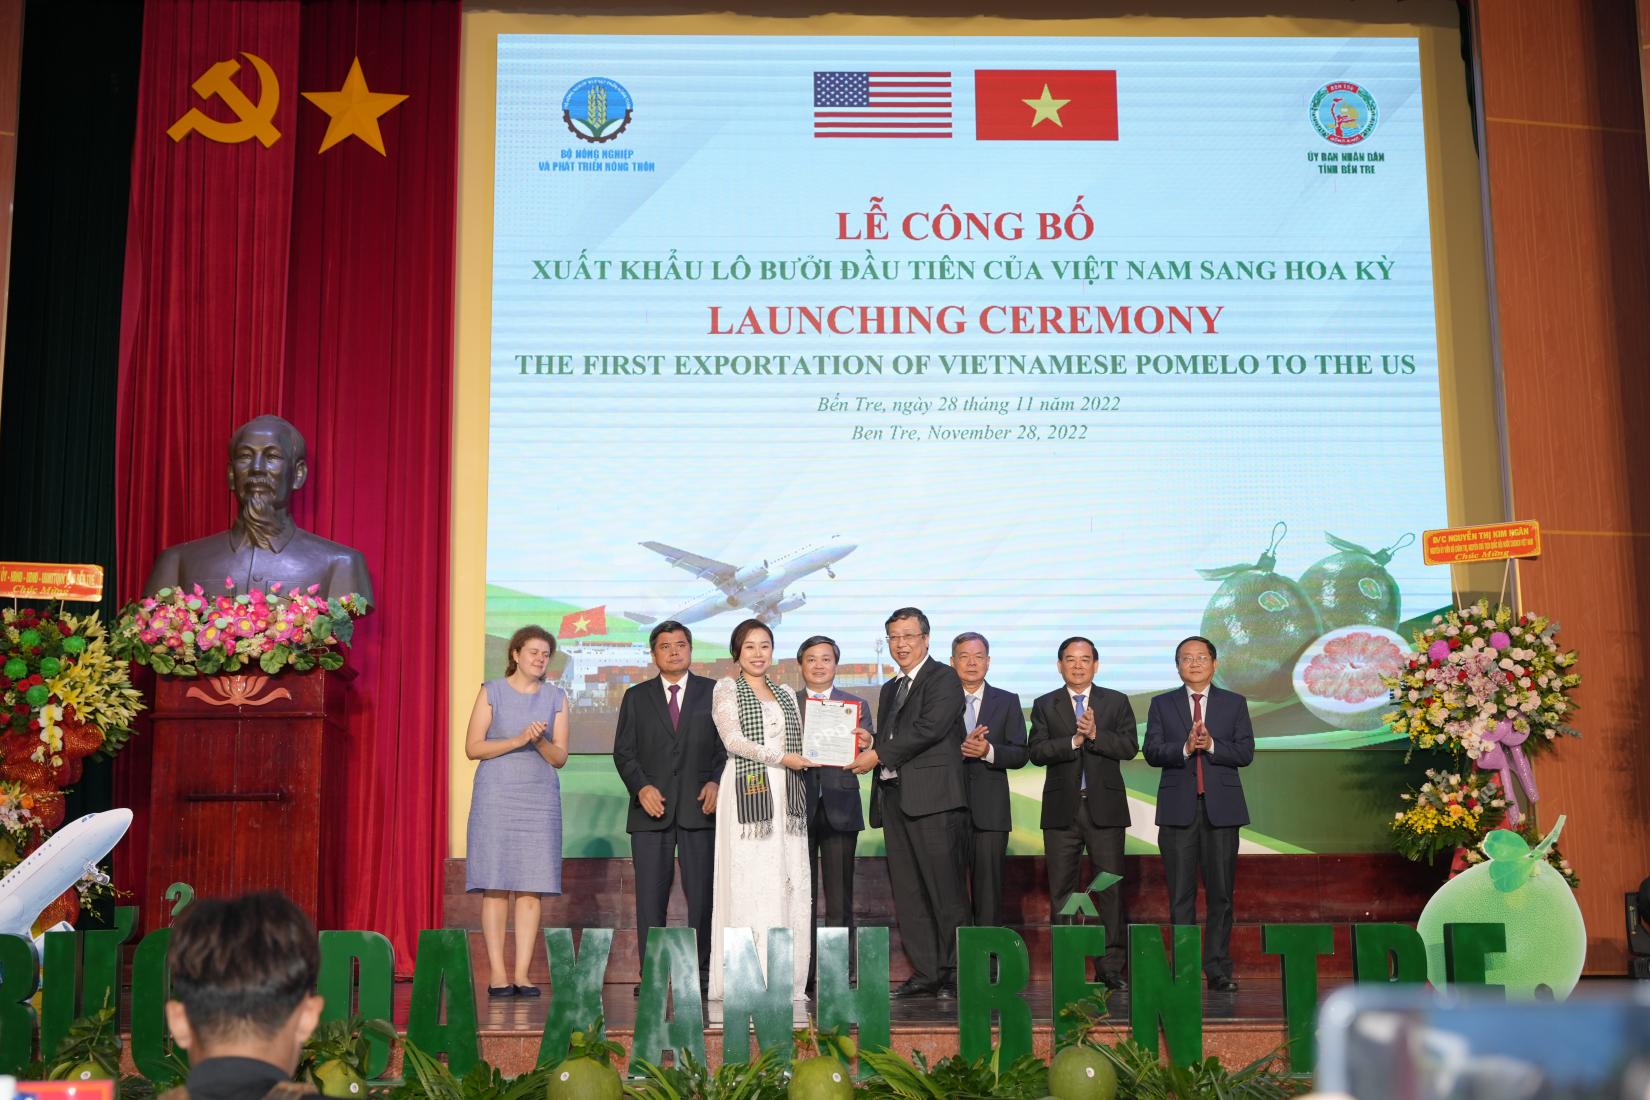 Lễ công bố xuất khẩu lô bưởi đầu tiên của Việt Nam sang Hoa Kỳ